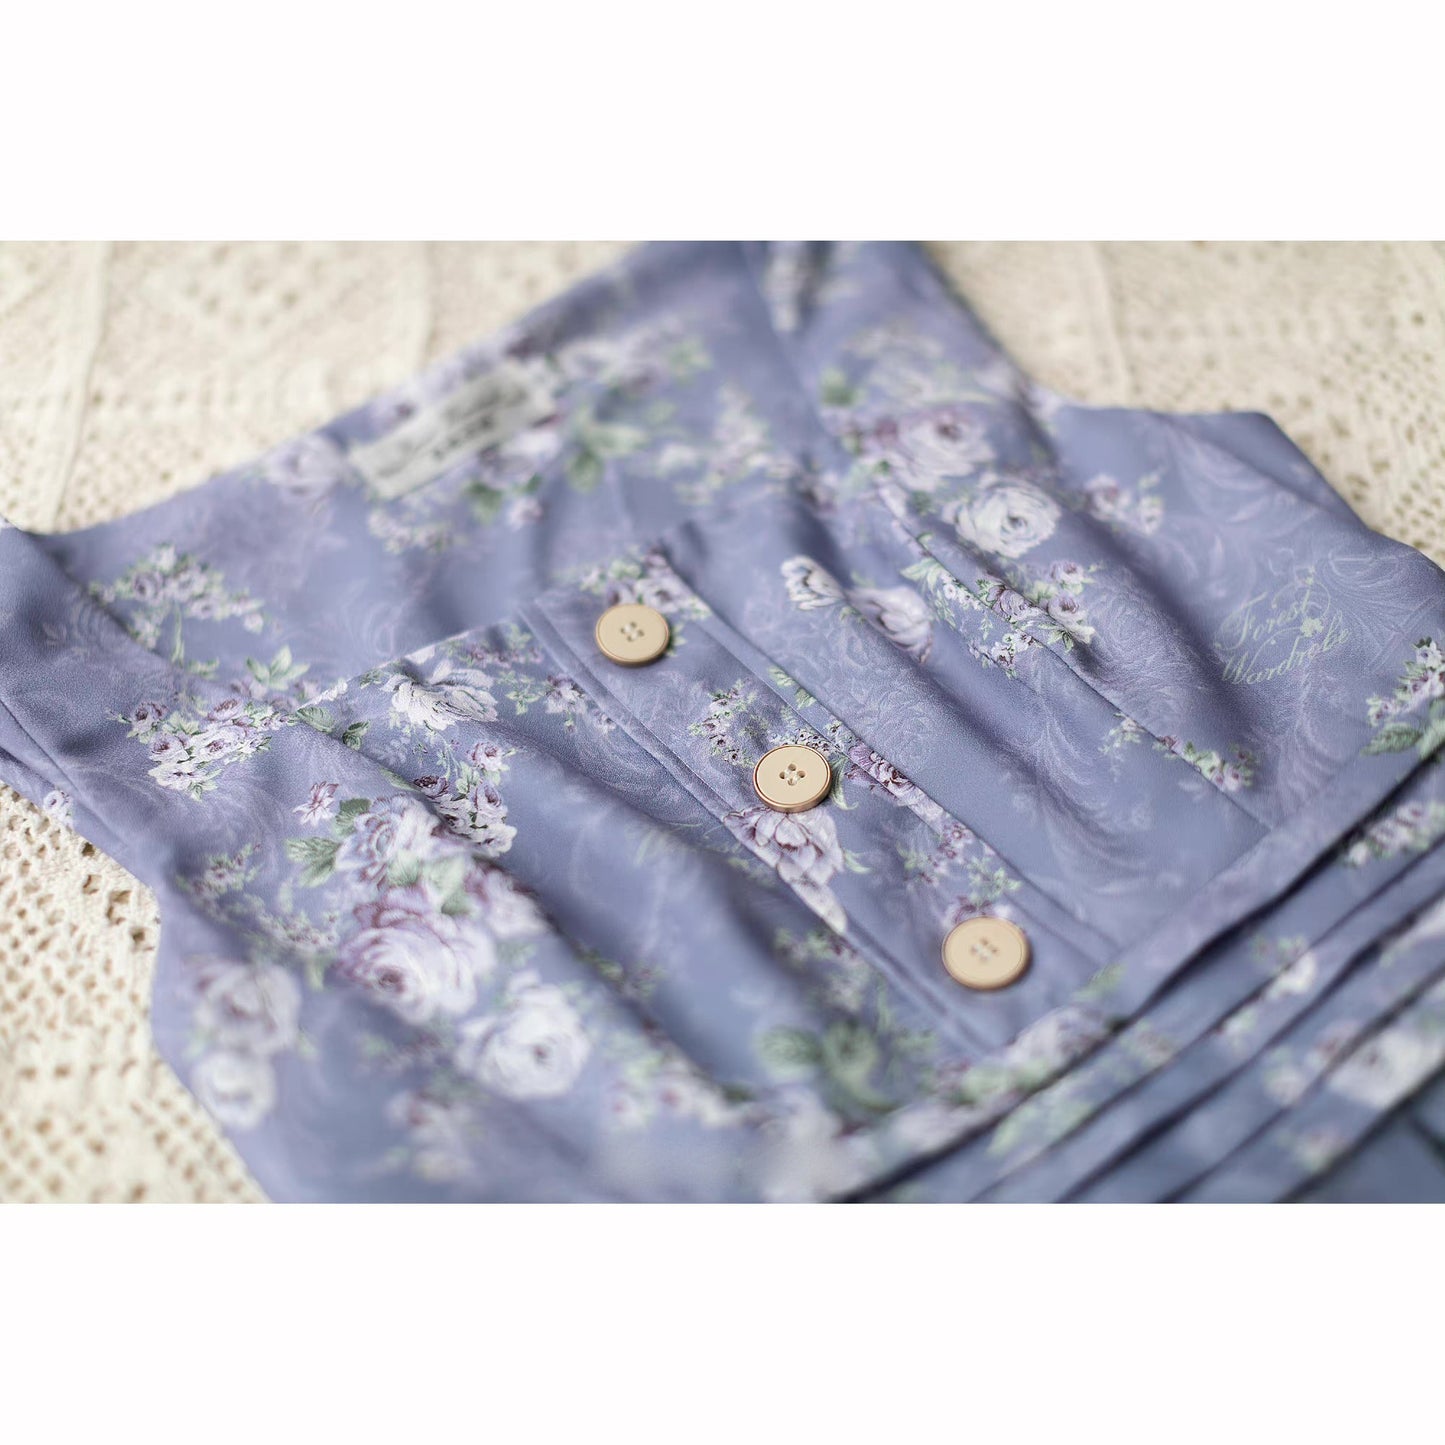 青藤の薔薇の水彩画ジャンパースカートとハイネックリボンブラウス